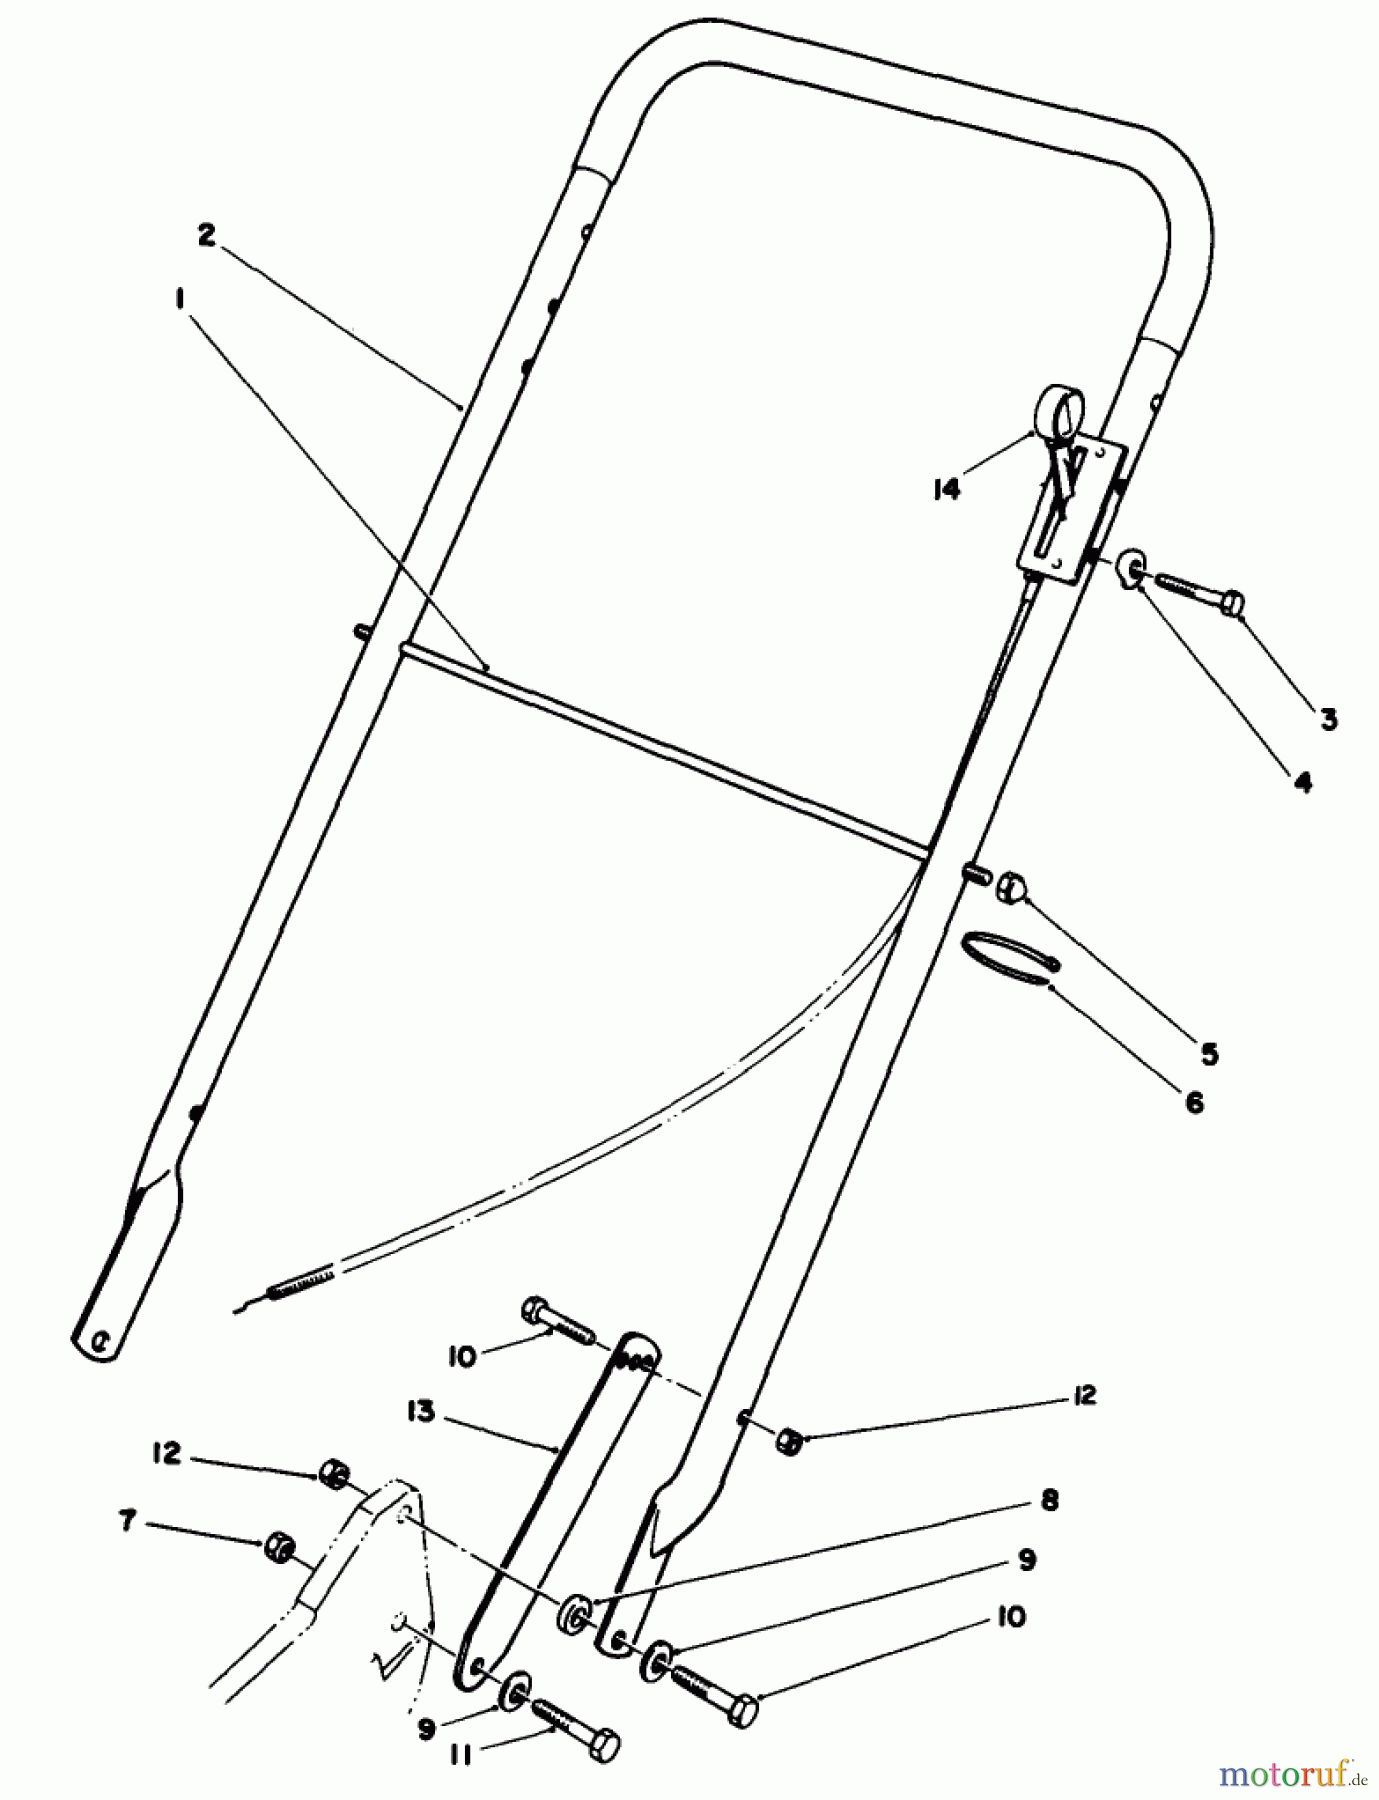  Toro Neu Mowers, Walk-Behind Seite 2 22030 - Toro Lawnmower, 1989 (9000001-9999999) HANDLE ASSEMBLY (MODEL 22030)